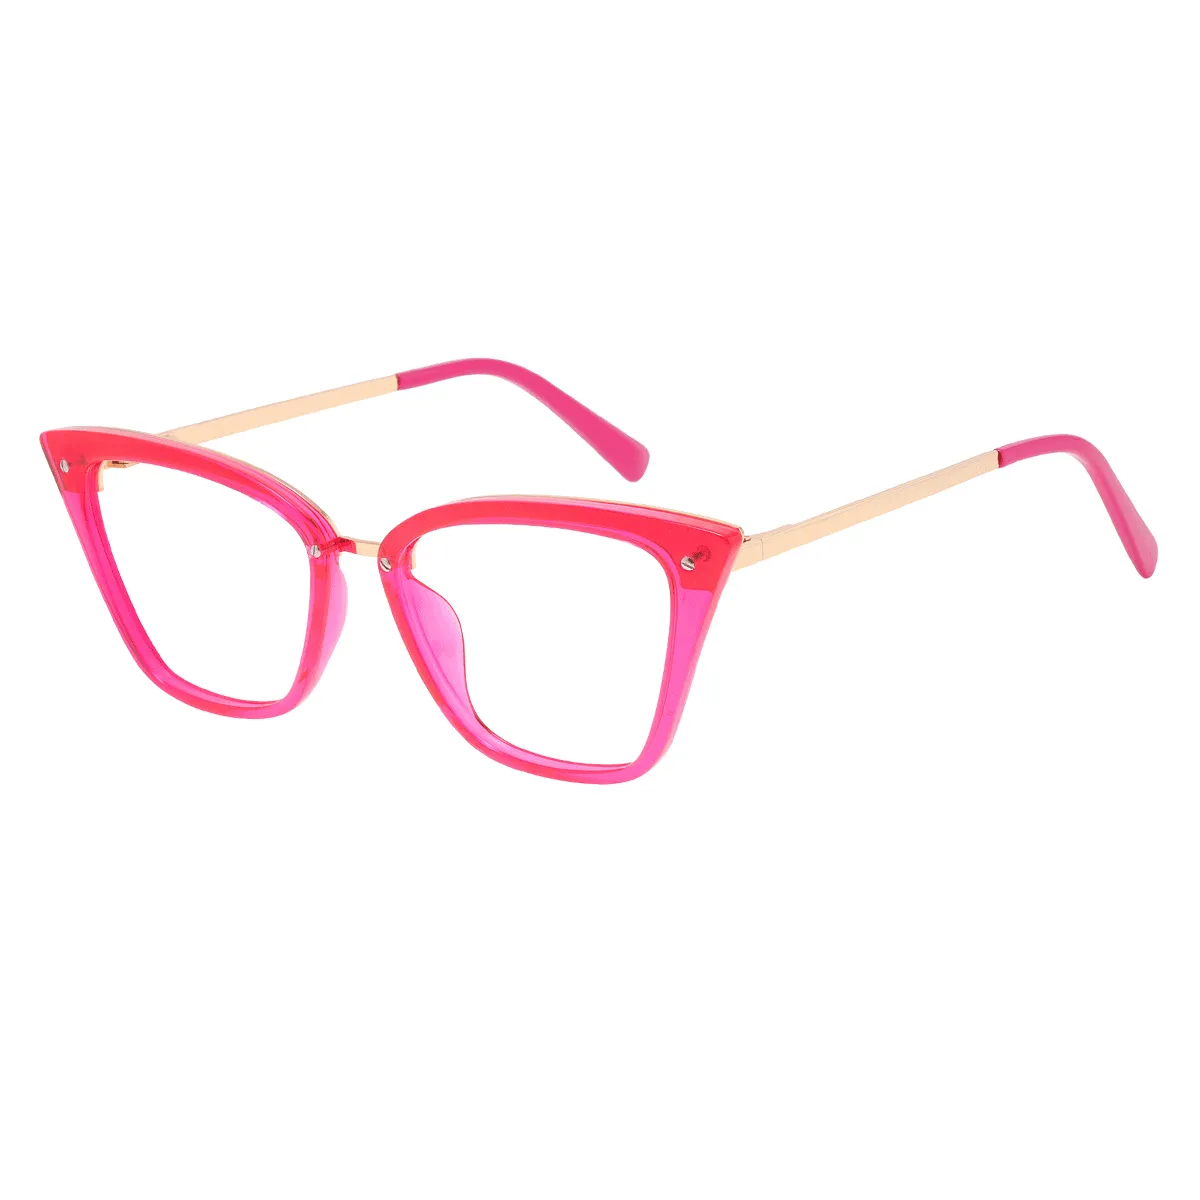 Joslyn - Cat-eye Pink Glasses for Women